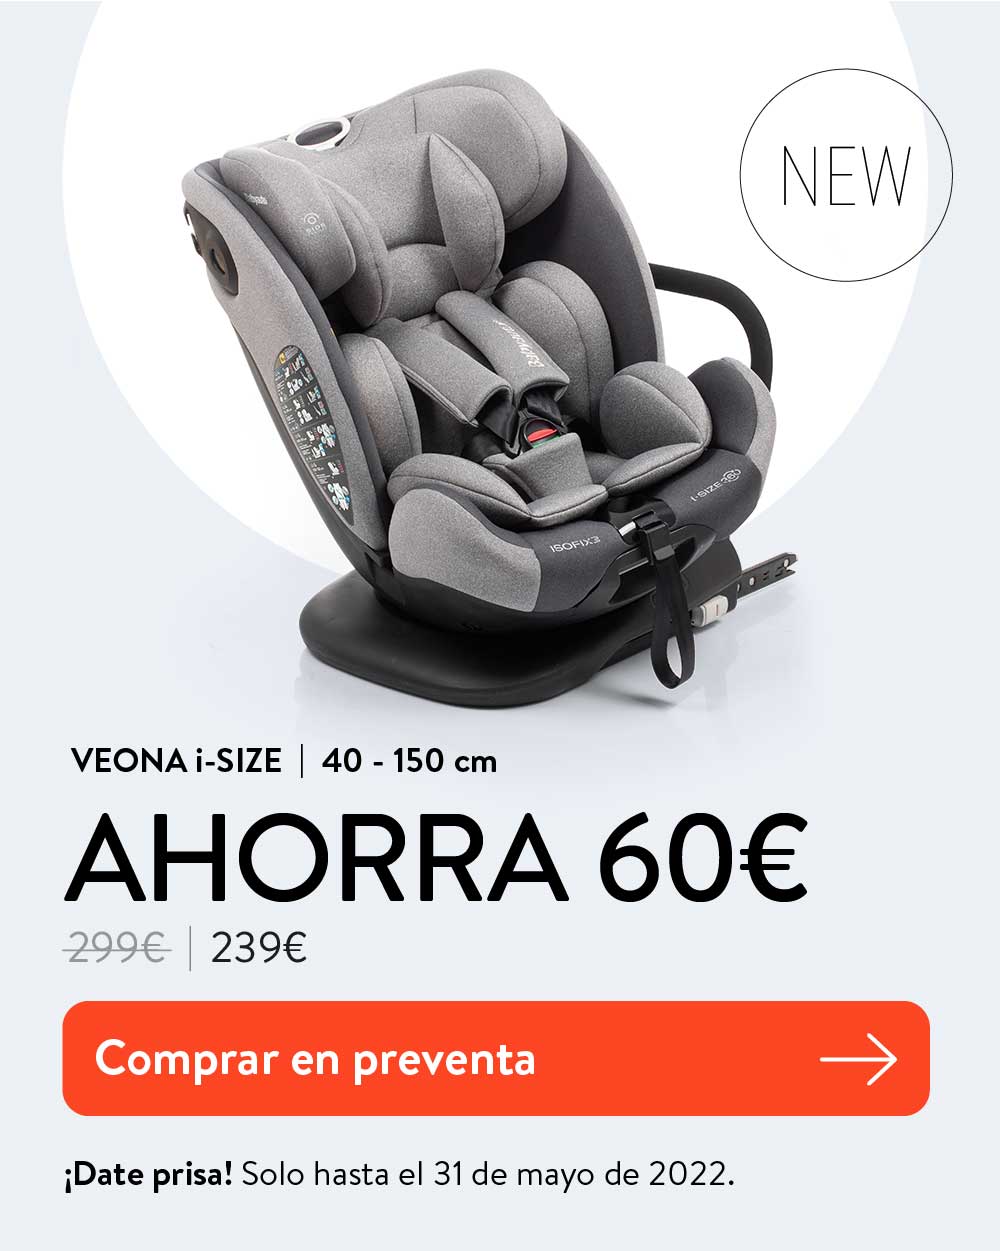 Silla infantil de coche Babyauto Veona con 20% de descuento. Disponible en 3 colores diferentes.